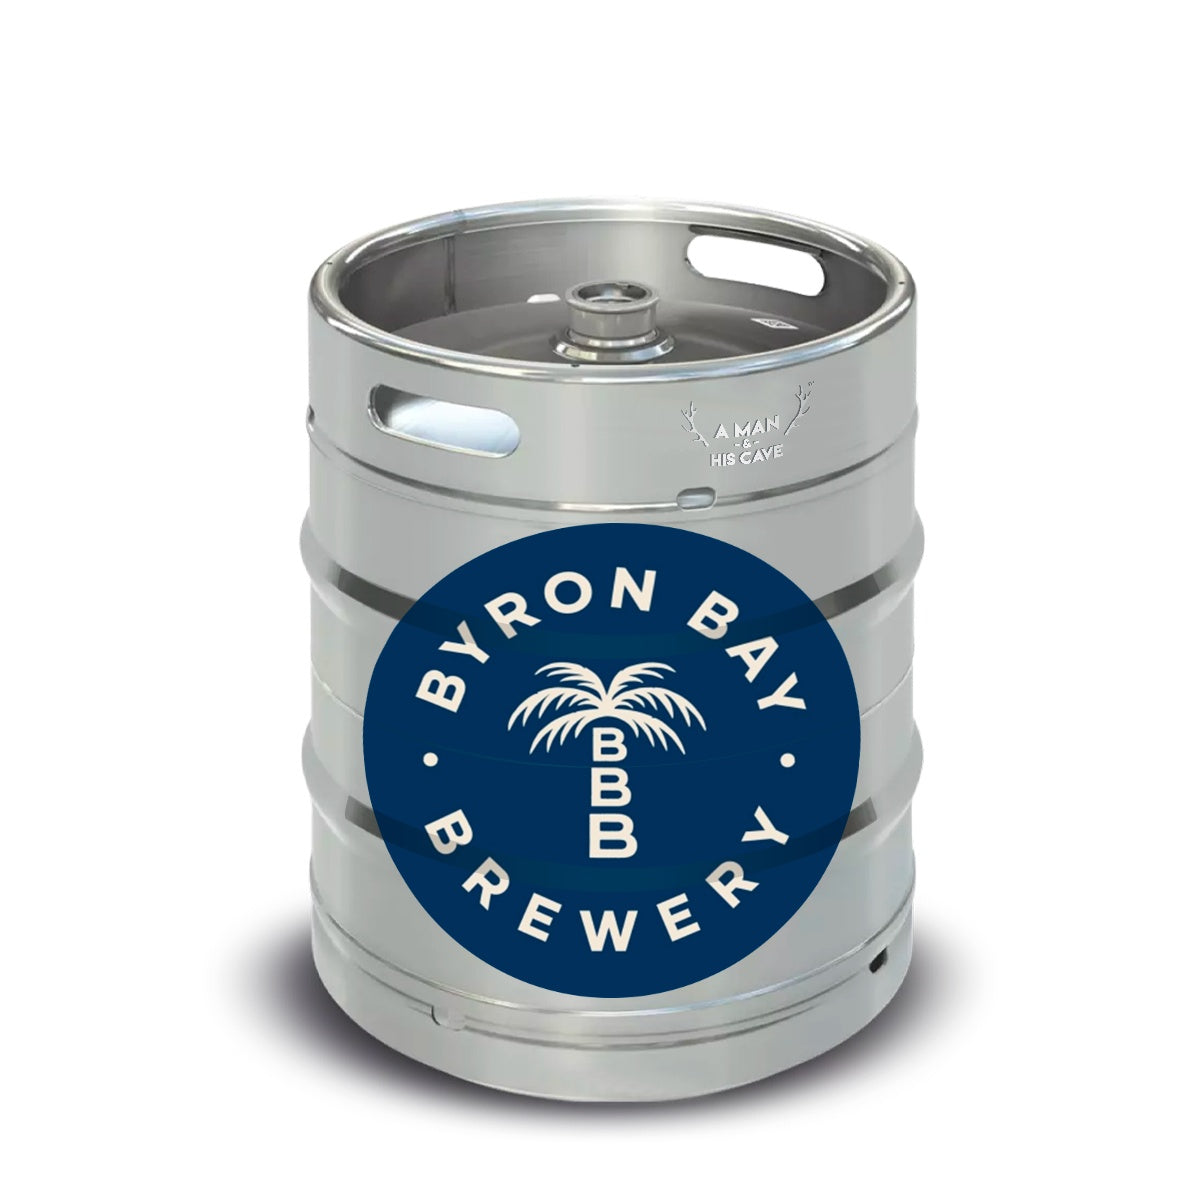 Beer Keg - Byron Bay Premium Lager 50lt Commercial Keg 4.2% A-Type Coupler [NSW]